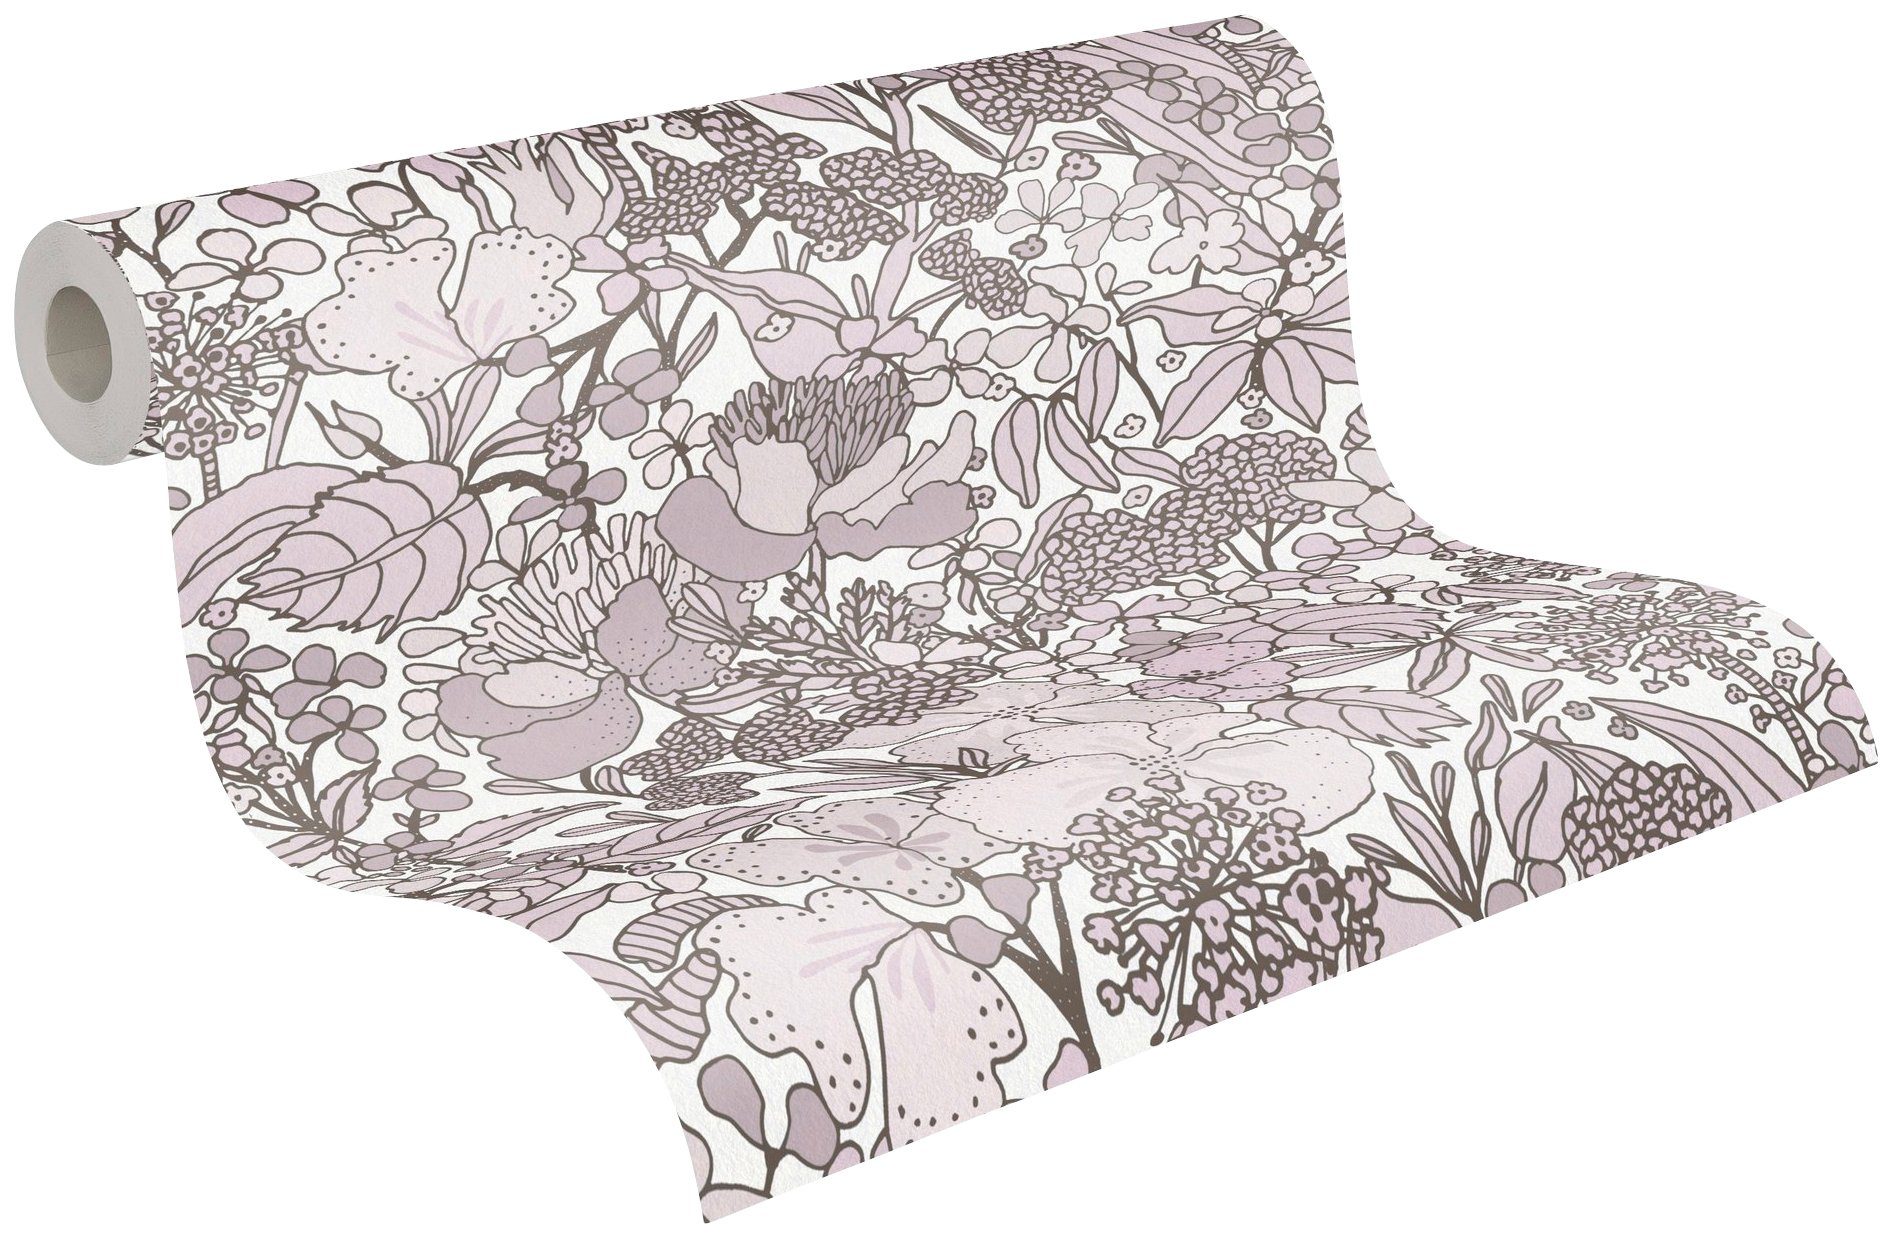 Architects Paper Vliestapete Floral Impression, Dschungel glatt, botanisch, Blumentapete floral, creme/braun/weiß Tapete